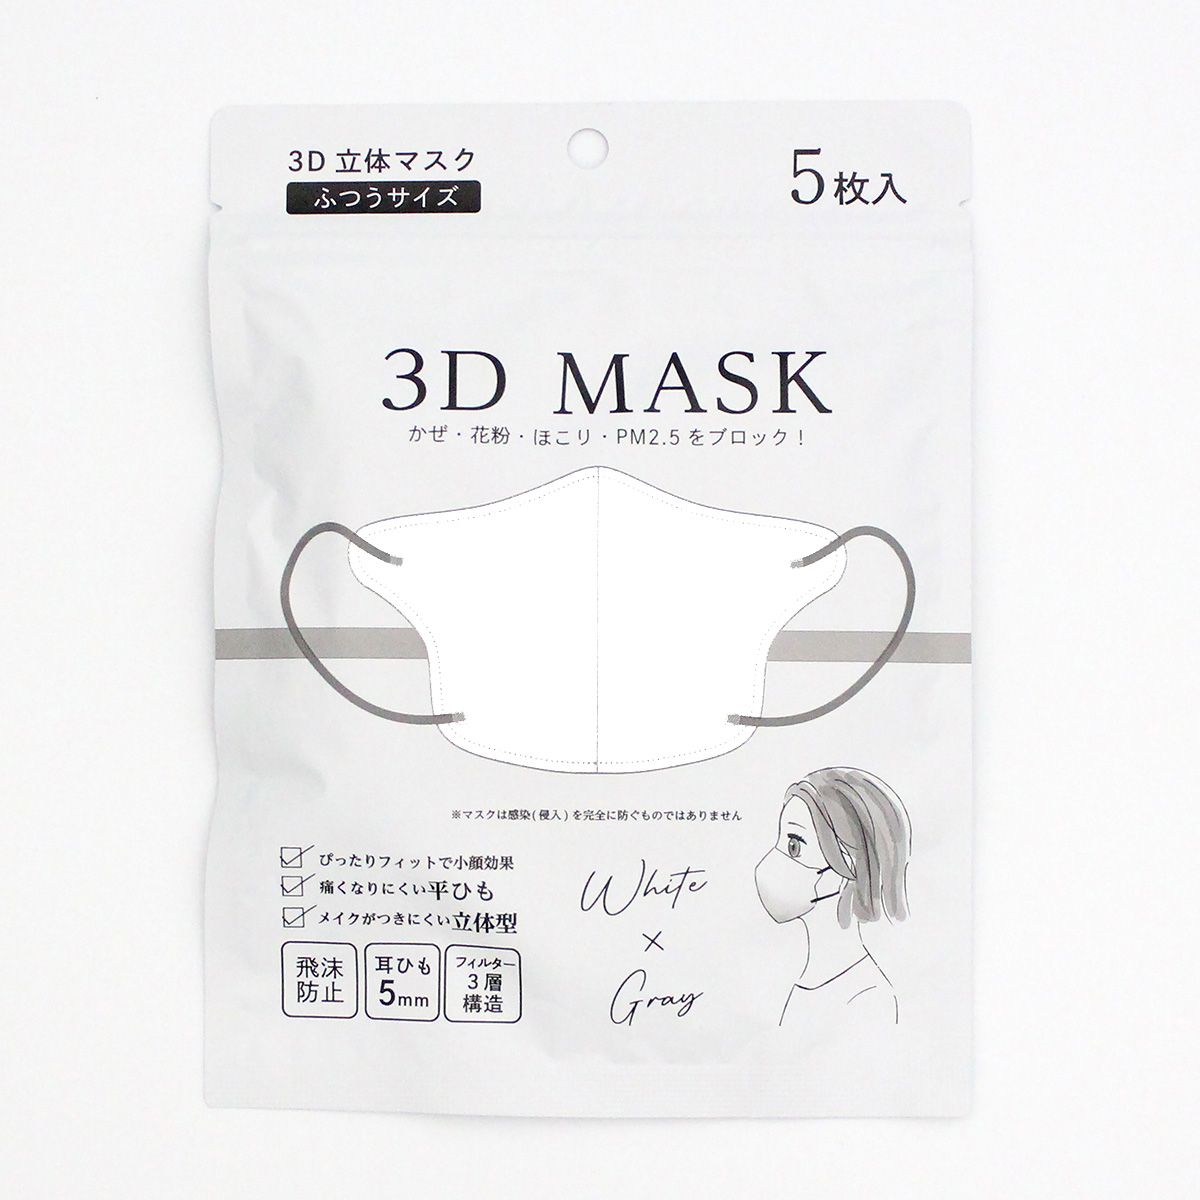 【在庫限り】3D立体マスク 不織布マスク ホワイト x グレー 5枚入り 347001